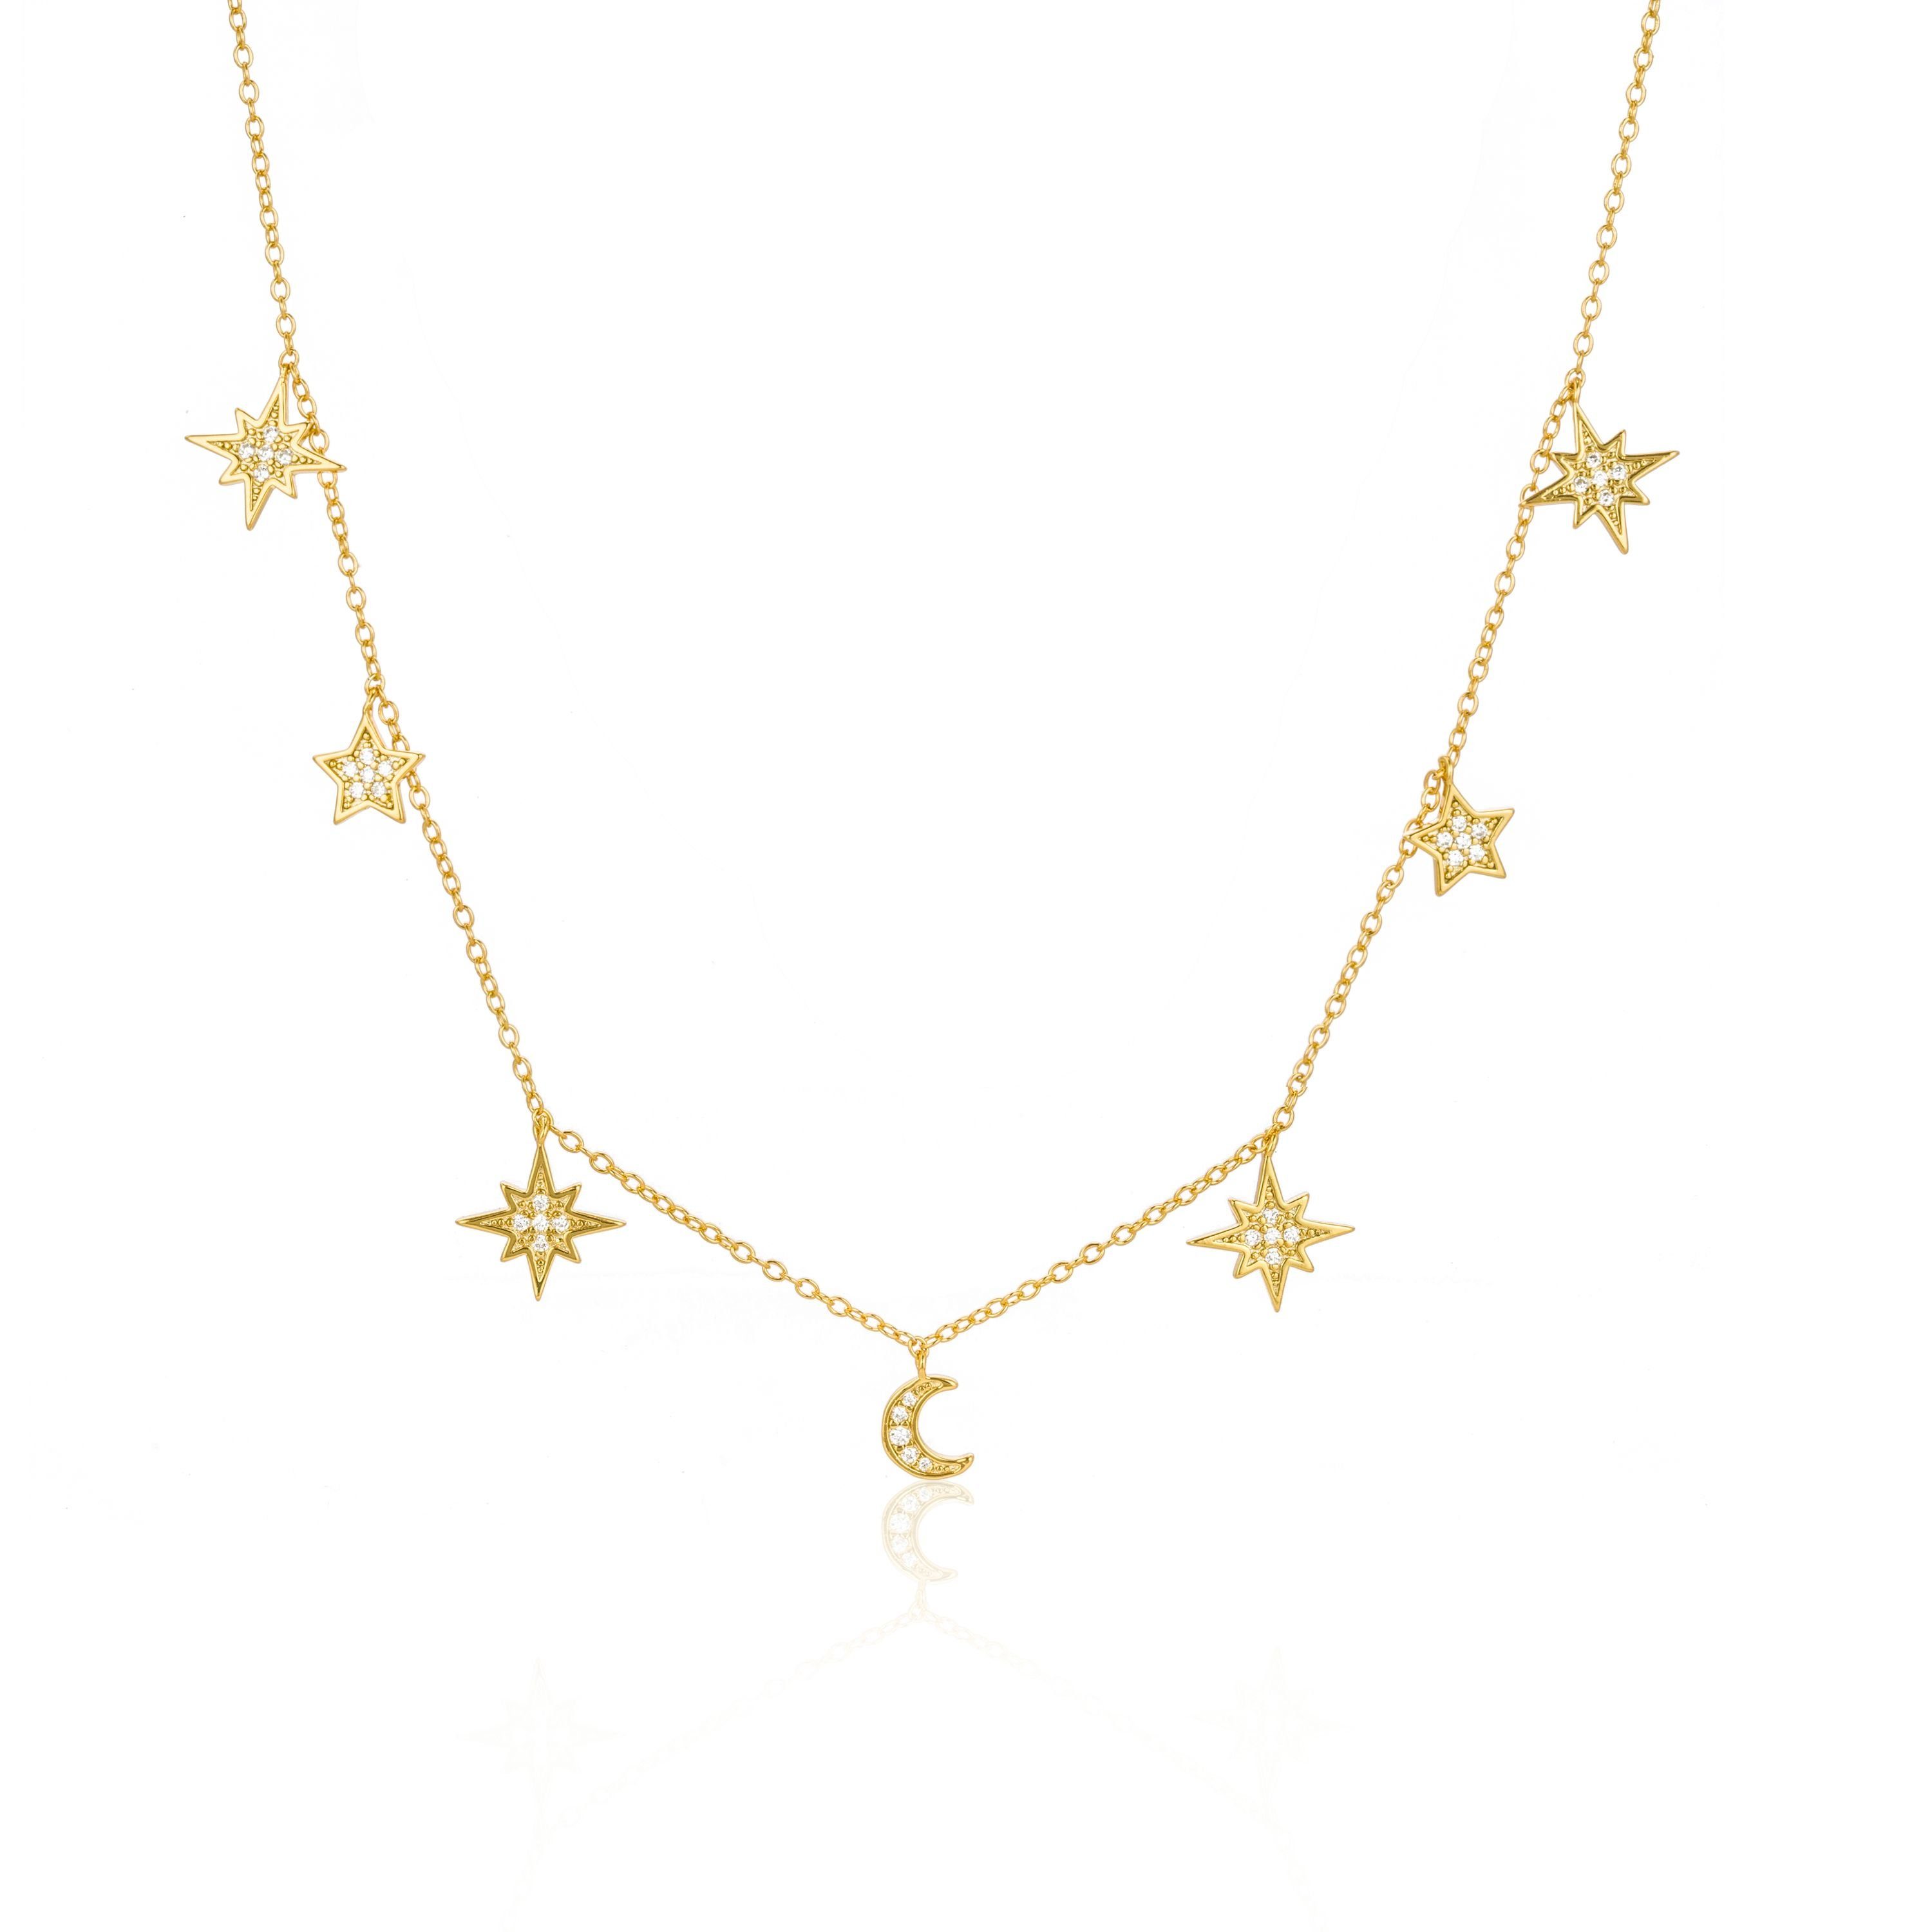 und Kette Sterne Mond Anhänger vergoldet, Weiße Brandlinger Halskette mit Silber Luanda, Zirkoniasteine 925